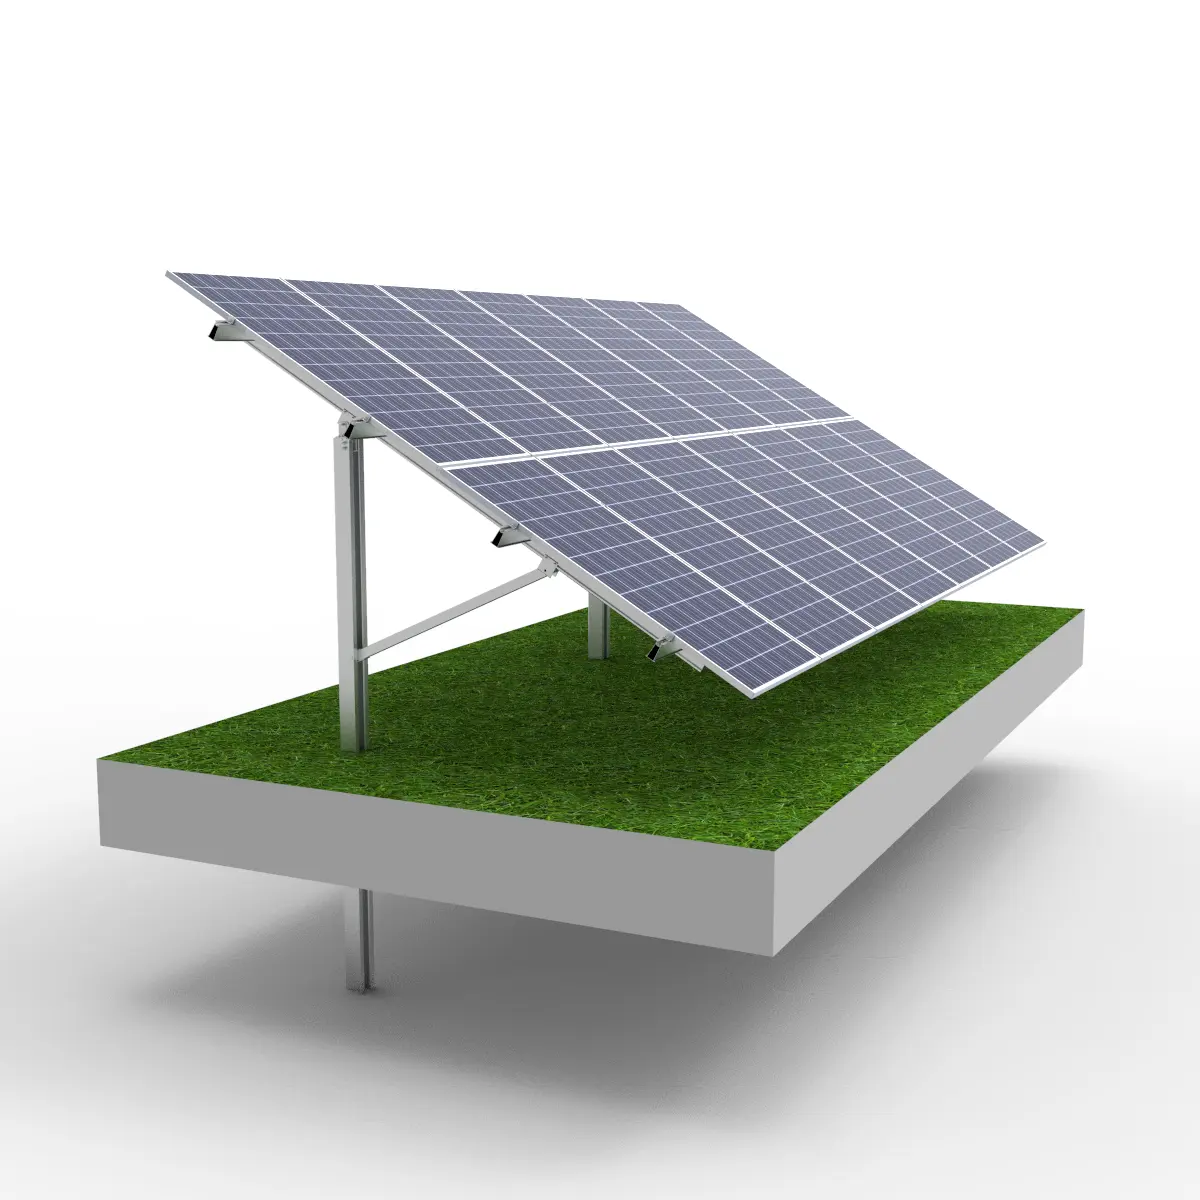 PV 태양 전지 패널 접지 키트 래밍 파일 재단 태양 장착 시스템 pv 태양 전지 패널 고정 장착 구조